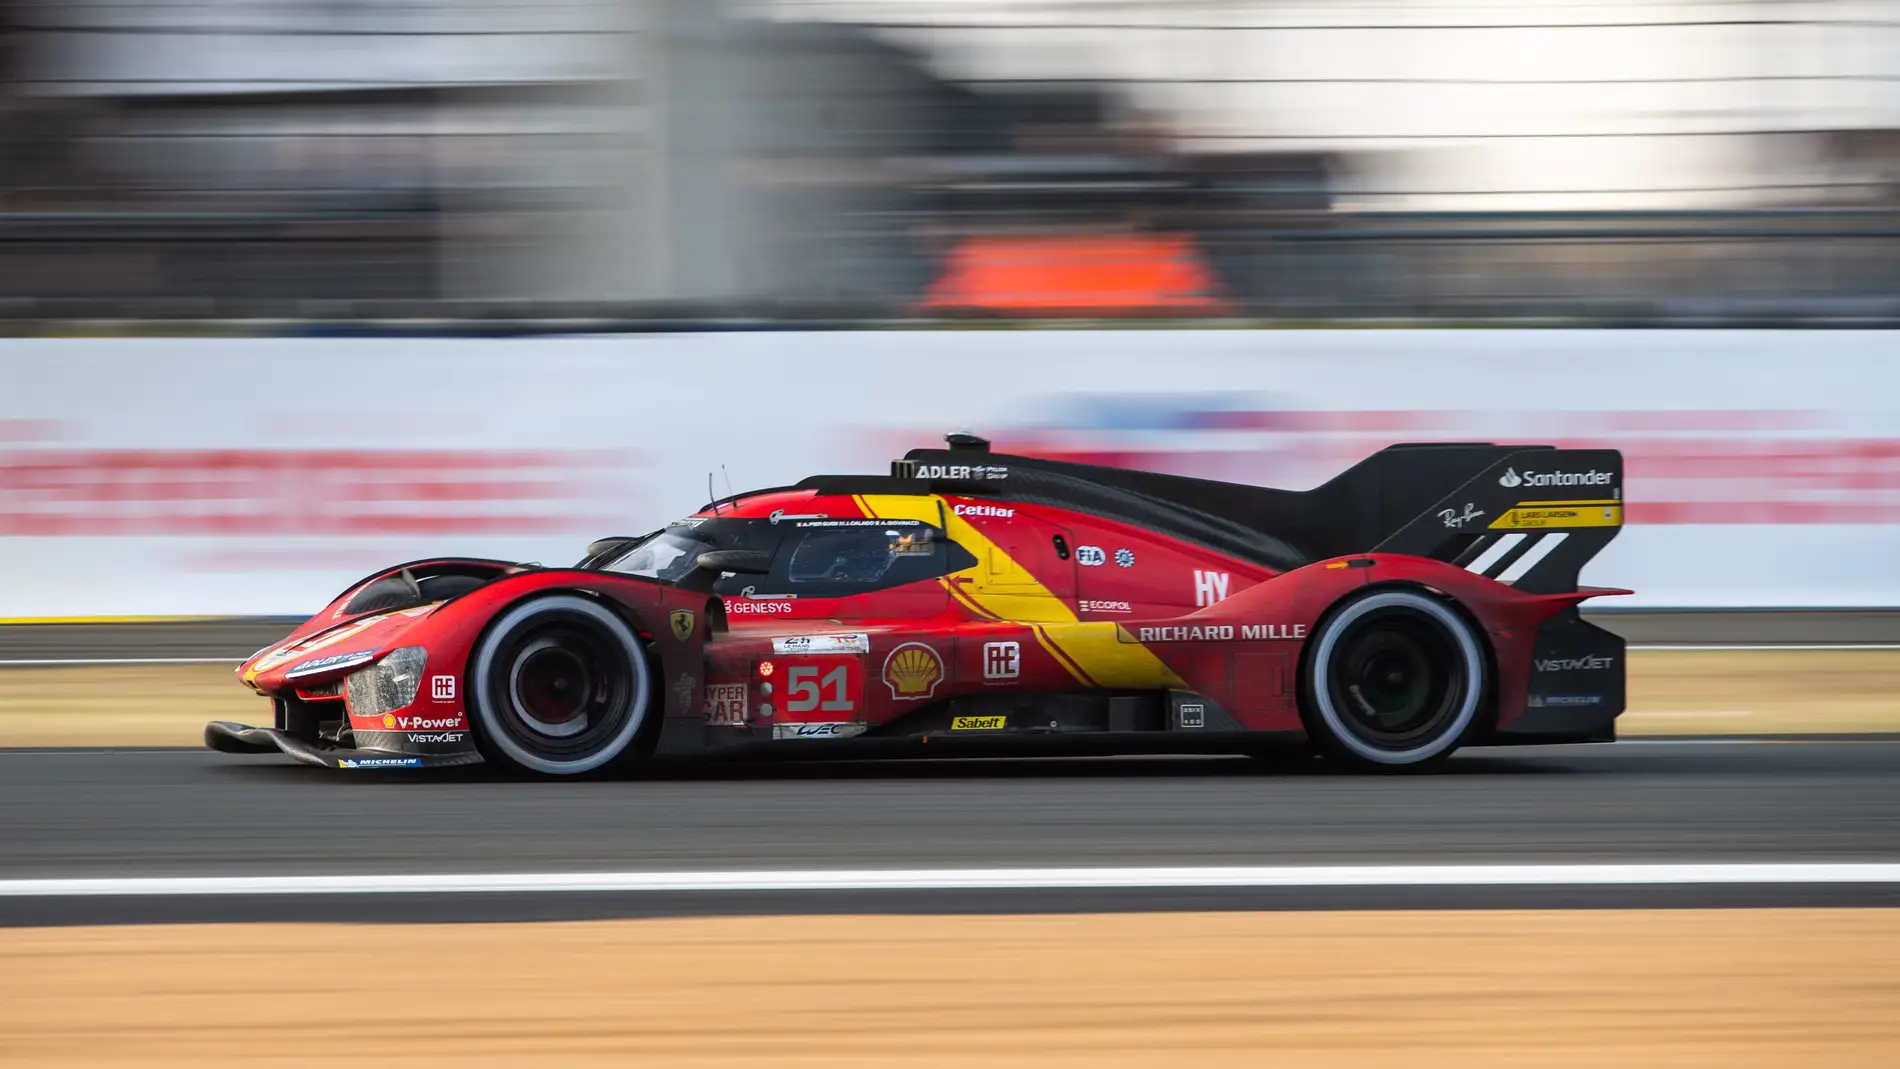 Ferrari hace historia ganando a la primera en su regreso a las 24 Horas de Le Mans